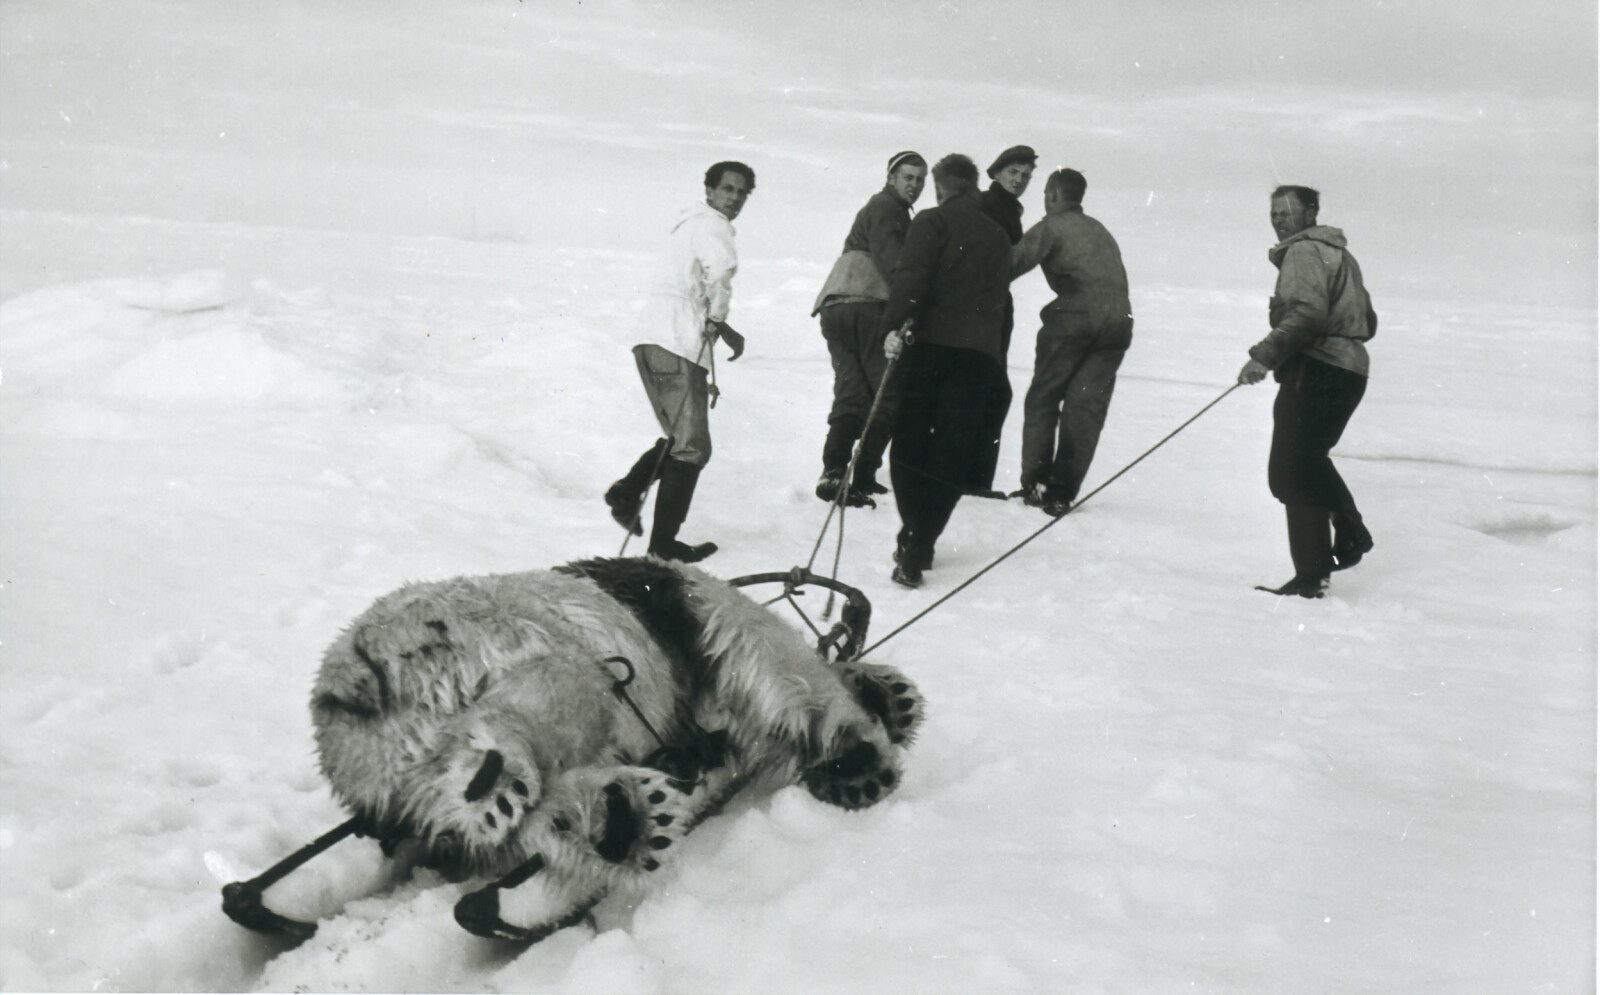 Seks menn drar isbjørn som ligger bundet fast på slede langsetter isen.